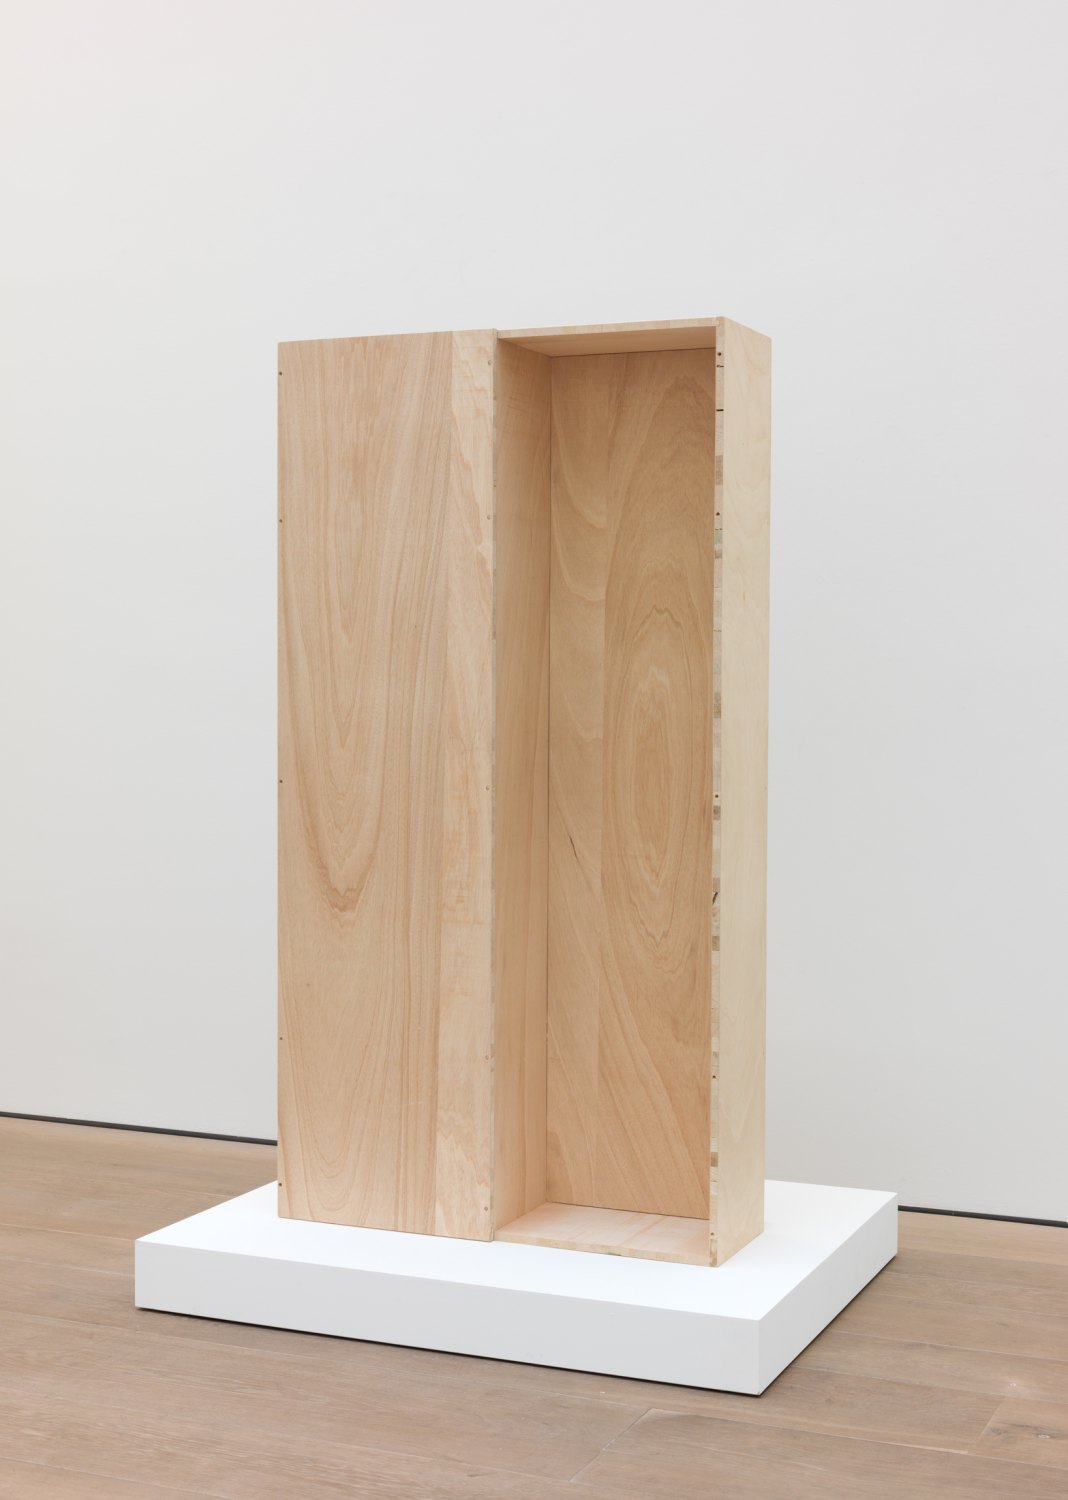 Andreas Slominski   Coffin Cadmium Red Medium, 2013    Wood, dispersion paint, 195.5 × 103.5 × 42 cm 